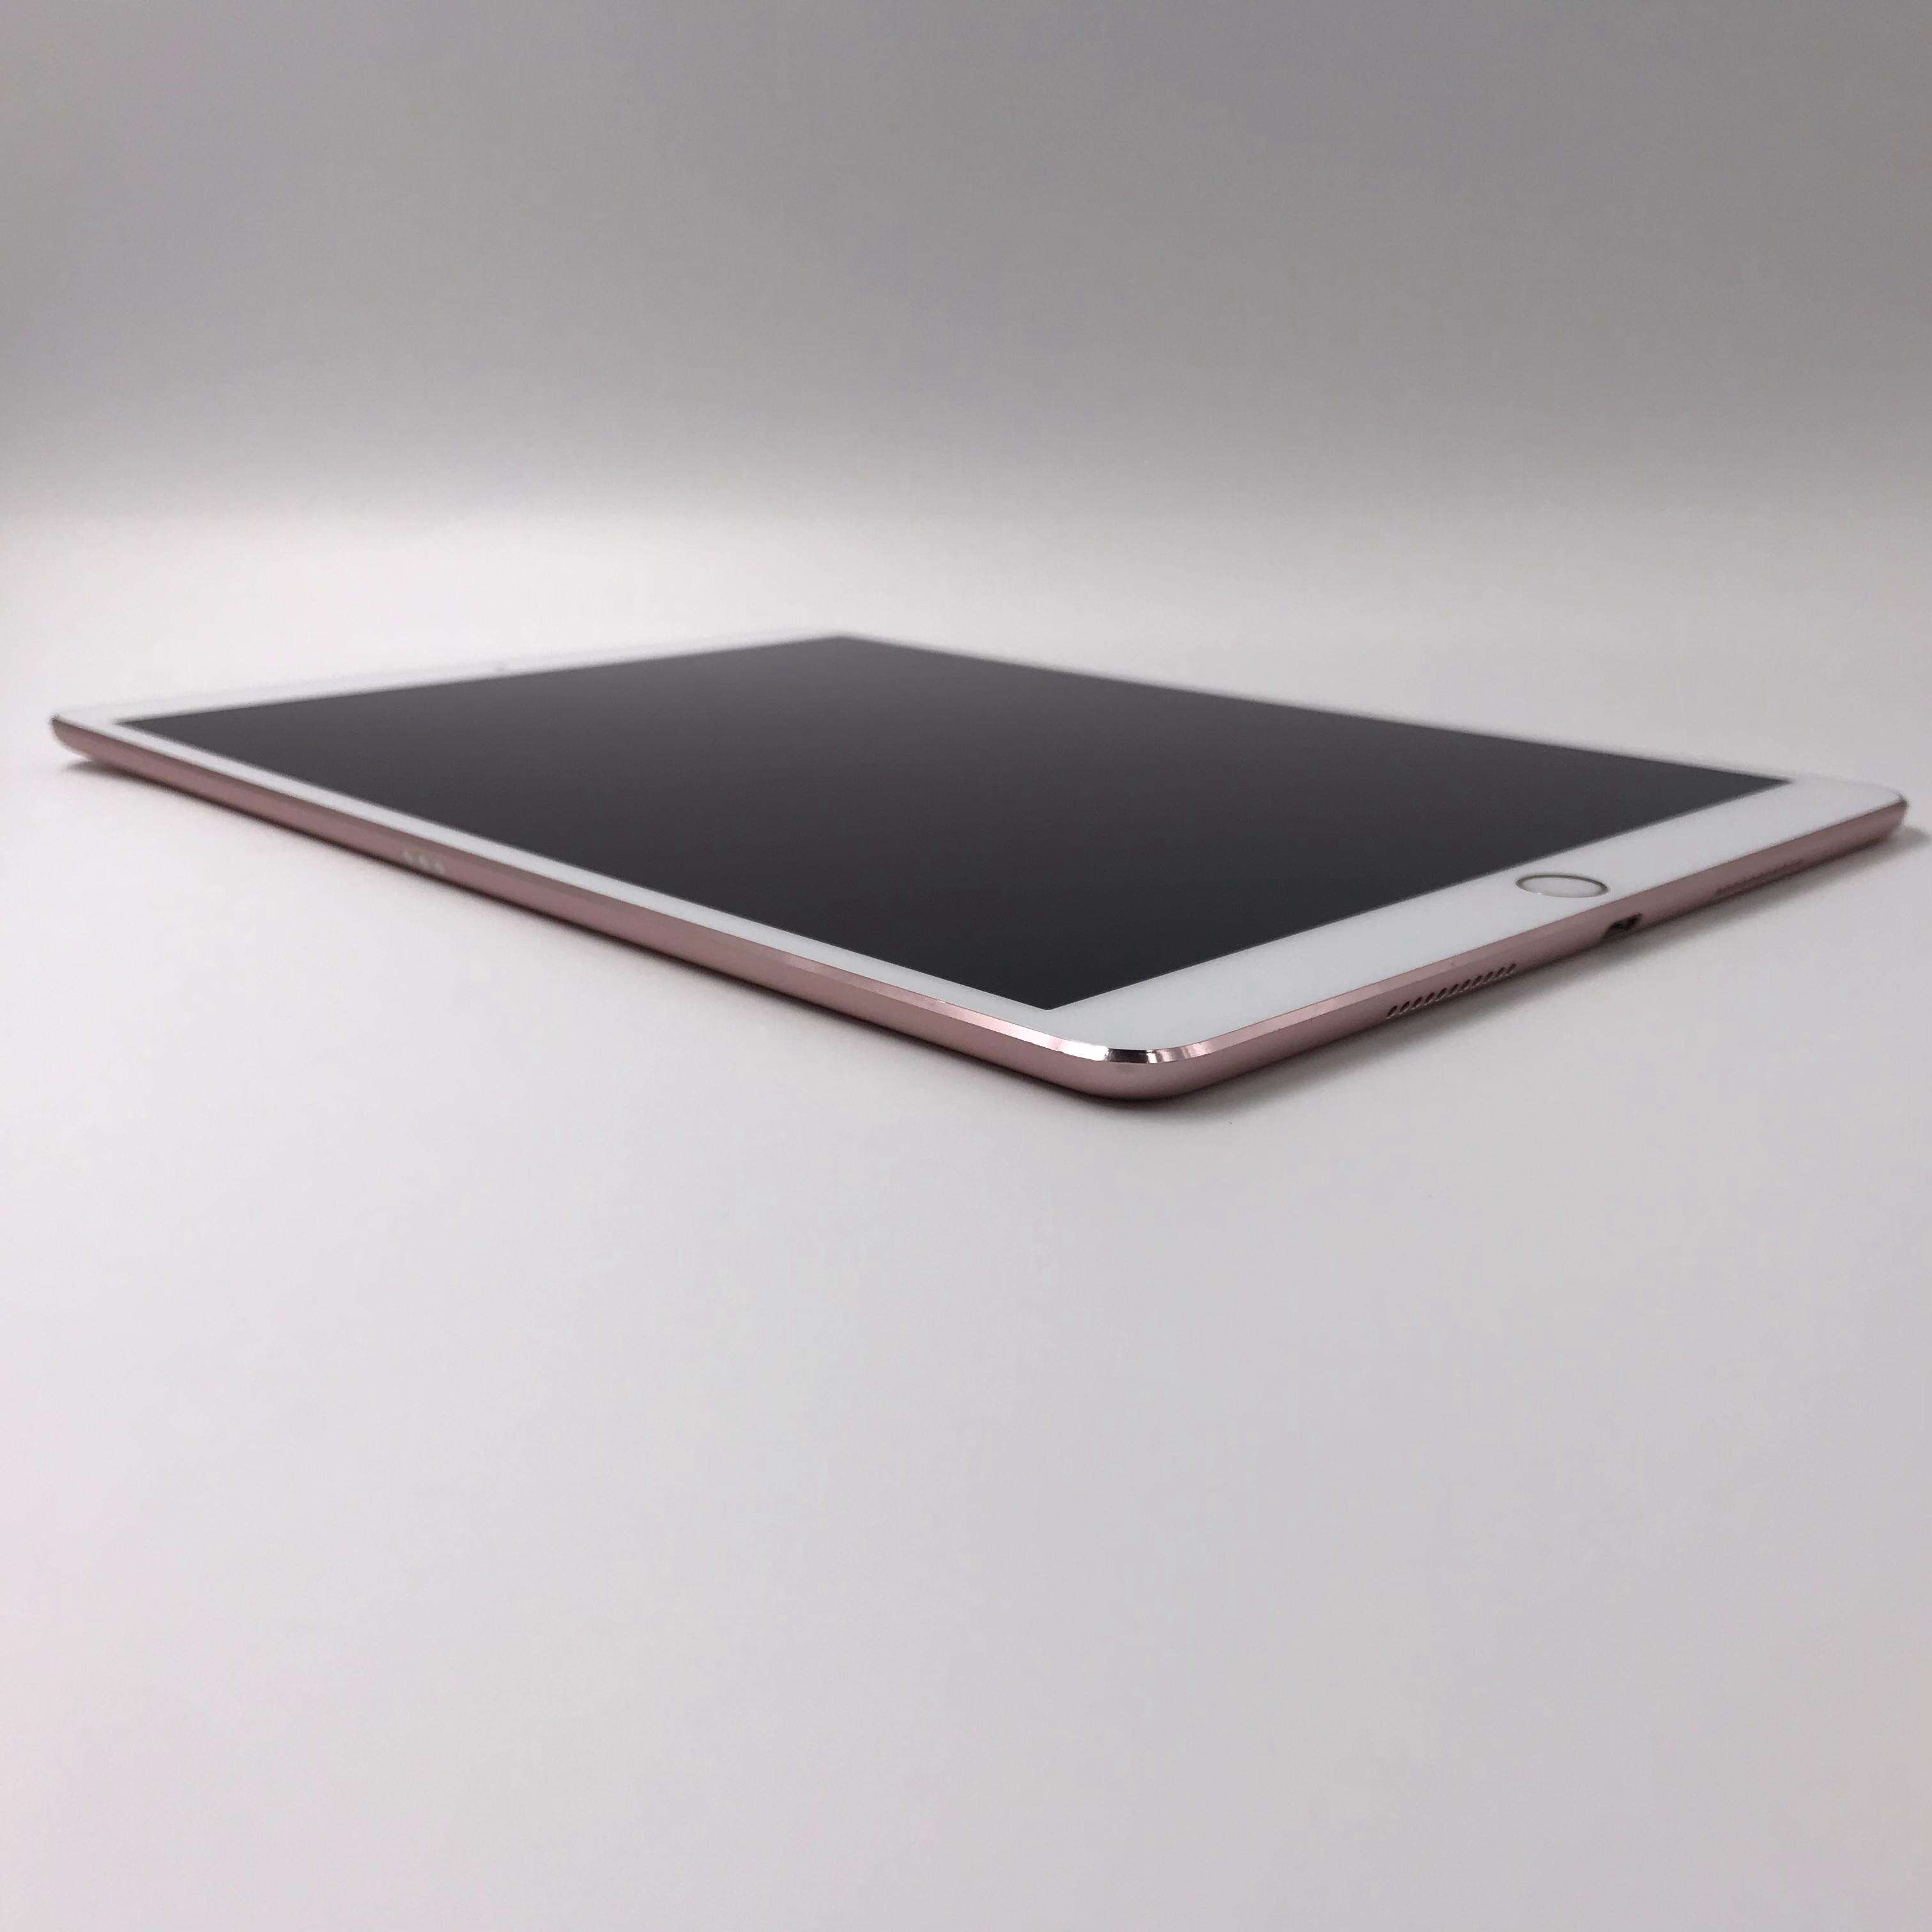 iPad Pro 10.5英寸(2017) 256G Cellular版